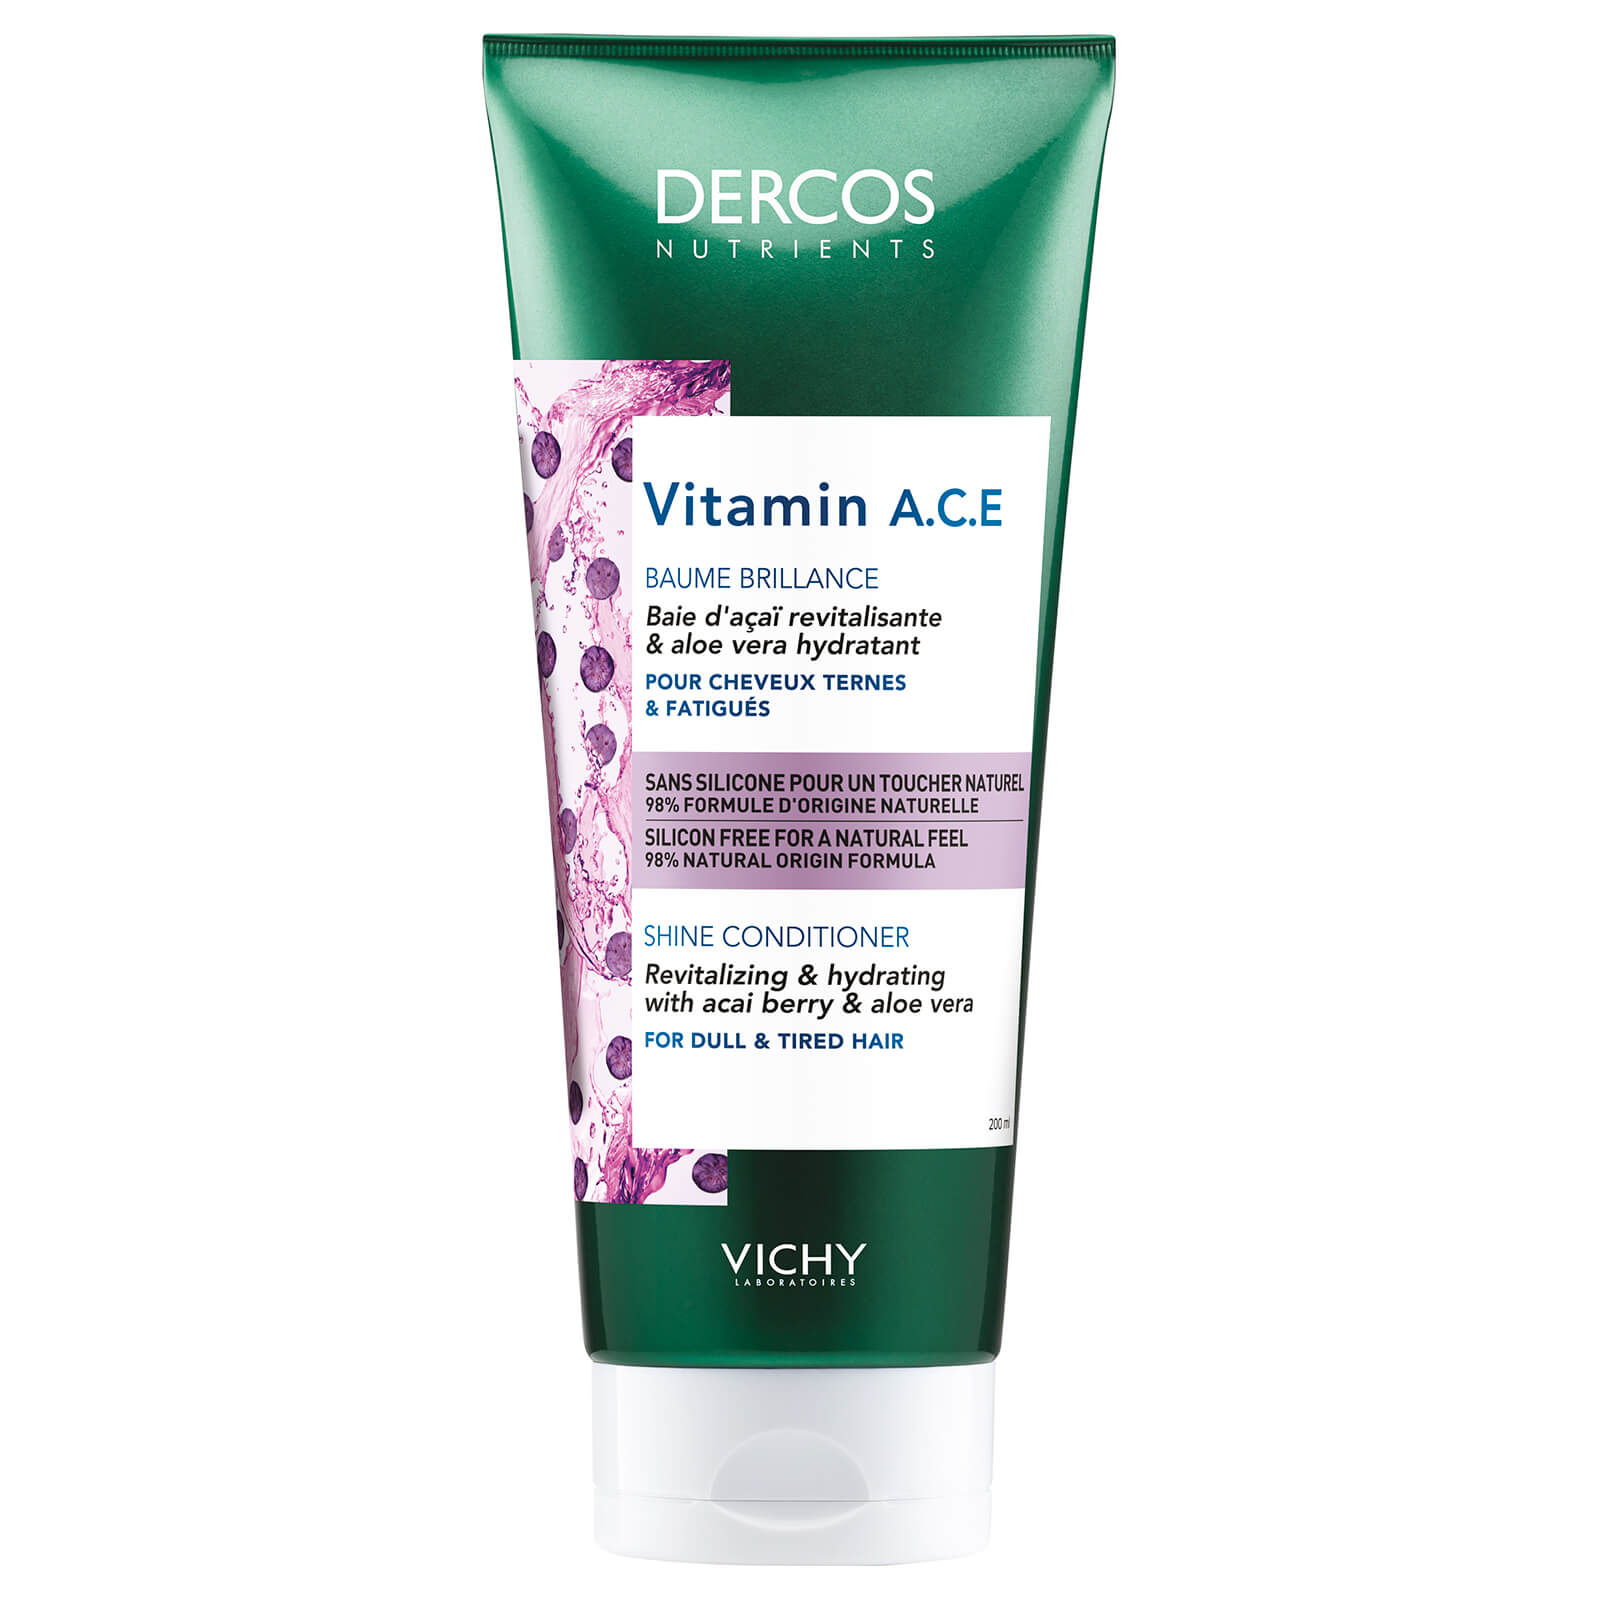 VICHY Dercos Nutrients Vitamin A.C.E Conditioner 200ml